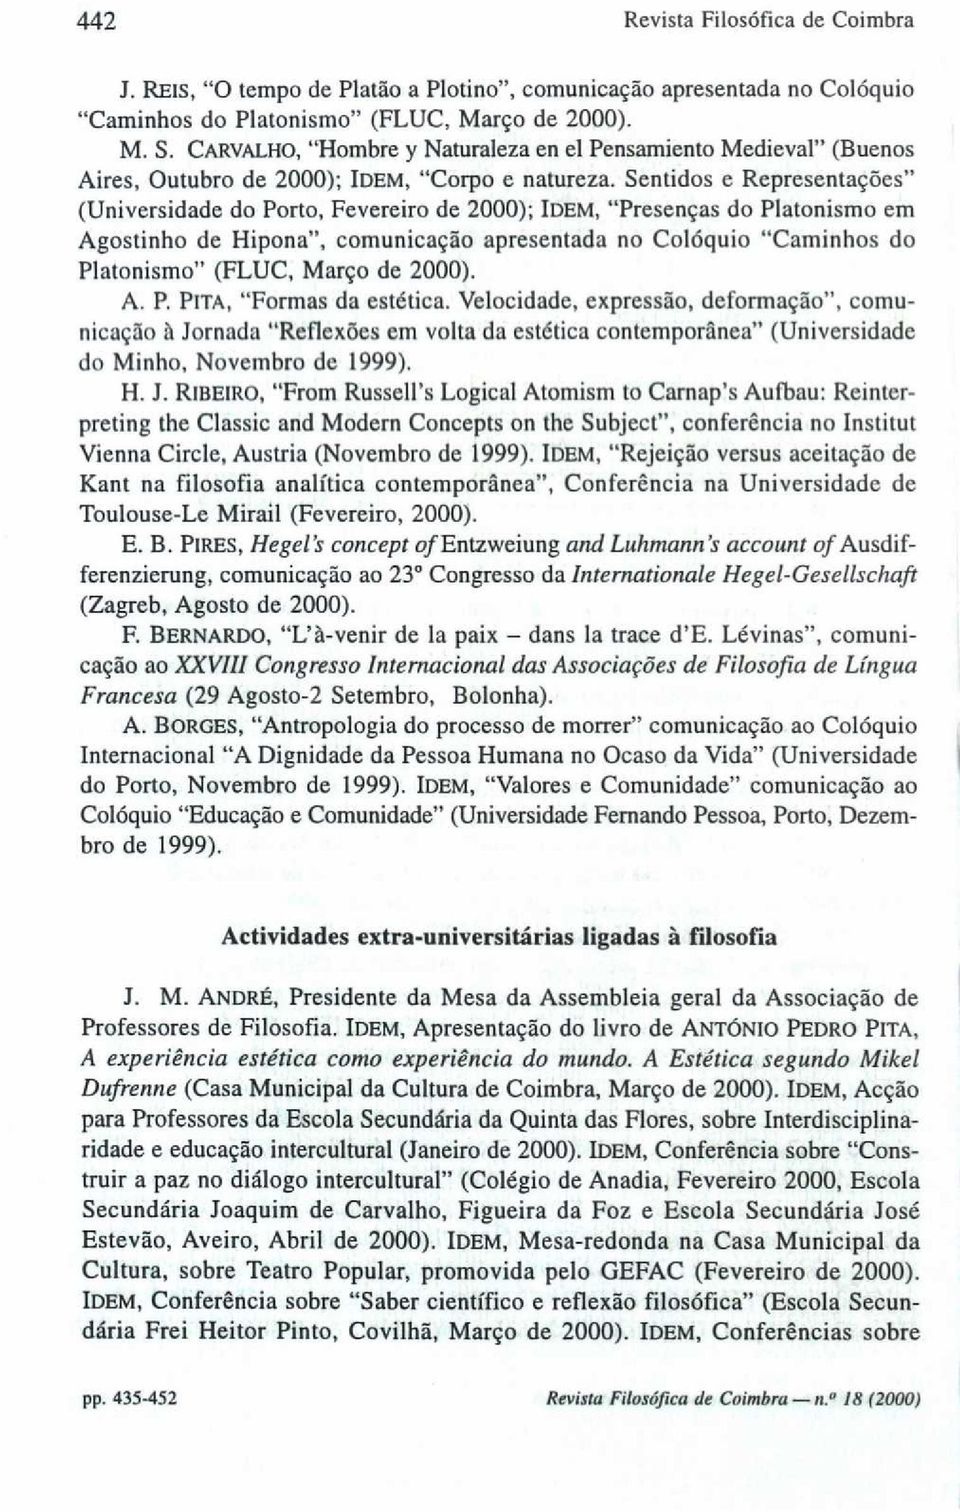 Sentidos e Representações" (Universidade do Porto, Fevereiro de 2000); IDEM, "Presenças do Platonismo em Agostinho de Hipona", comunicação apresentada no Colóquio "Caminhos do Platonismo" (FLUC,